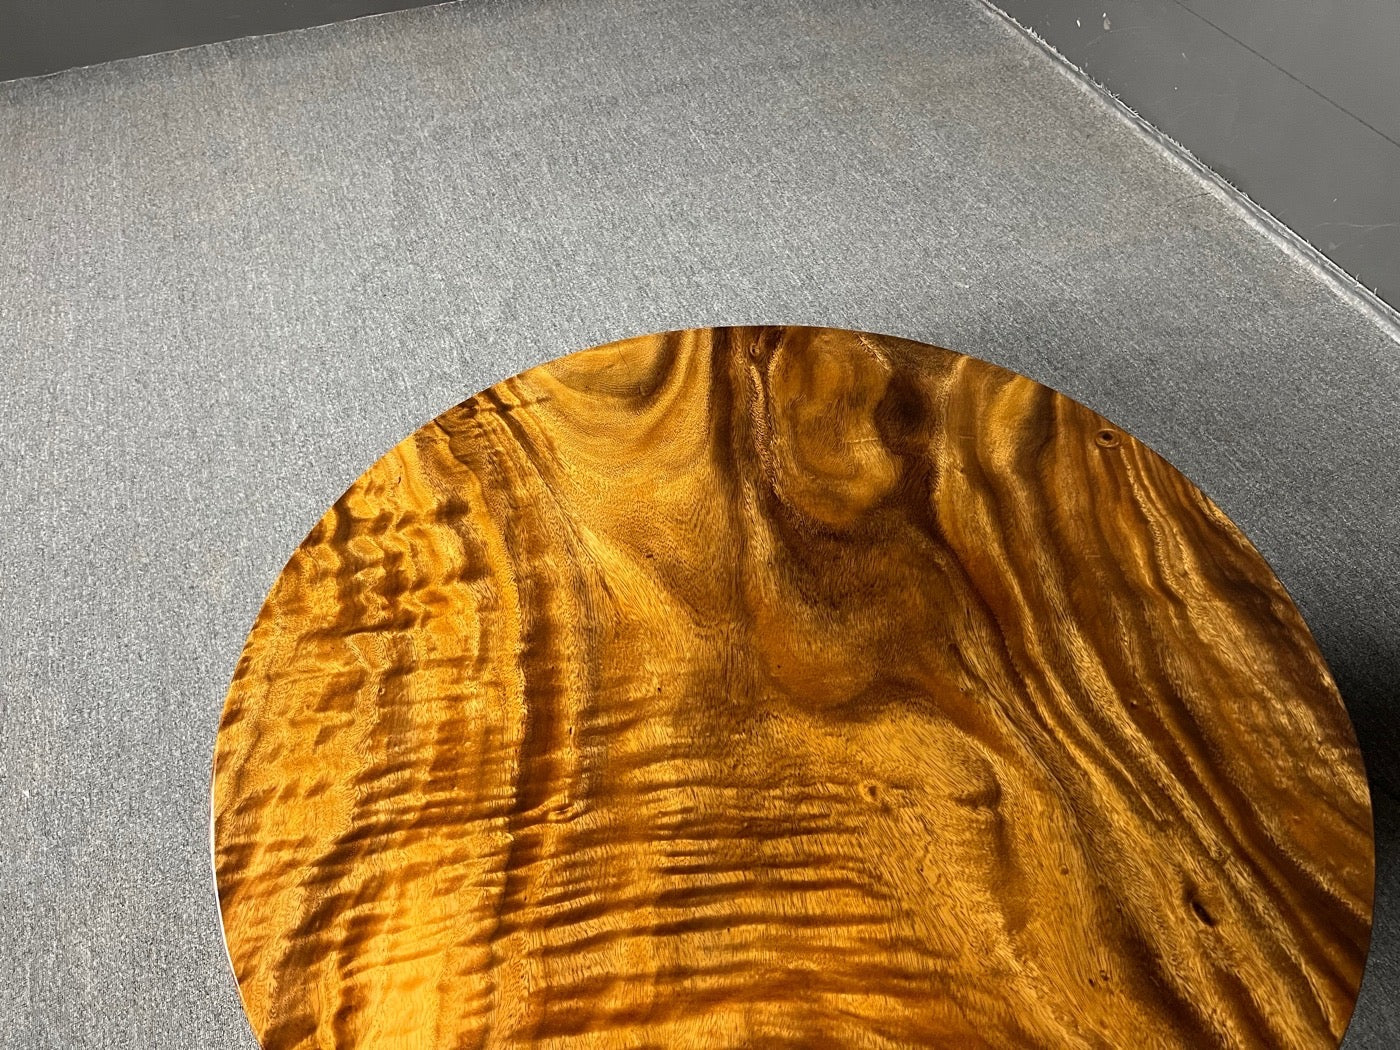 طاولة مستديرة خشبية حديثة، طاولة مستديرة من الخشب الحقيقي، طاولة مستديرة خشبية لـ 6 أشخاص، سطح طاولة مستديرة من الخشب غير مكتمل